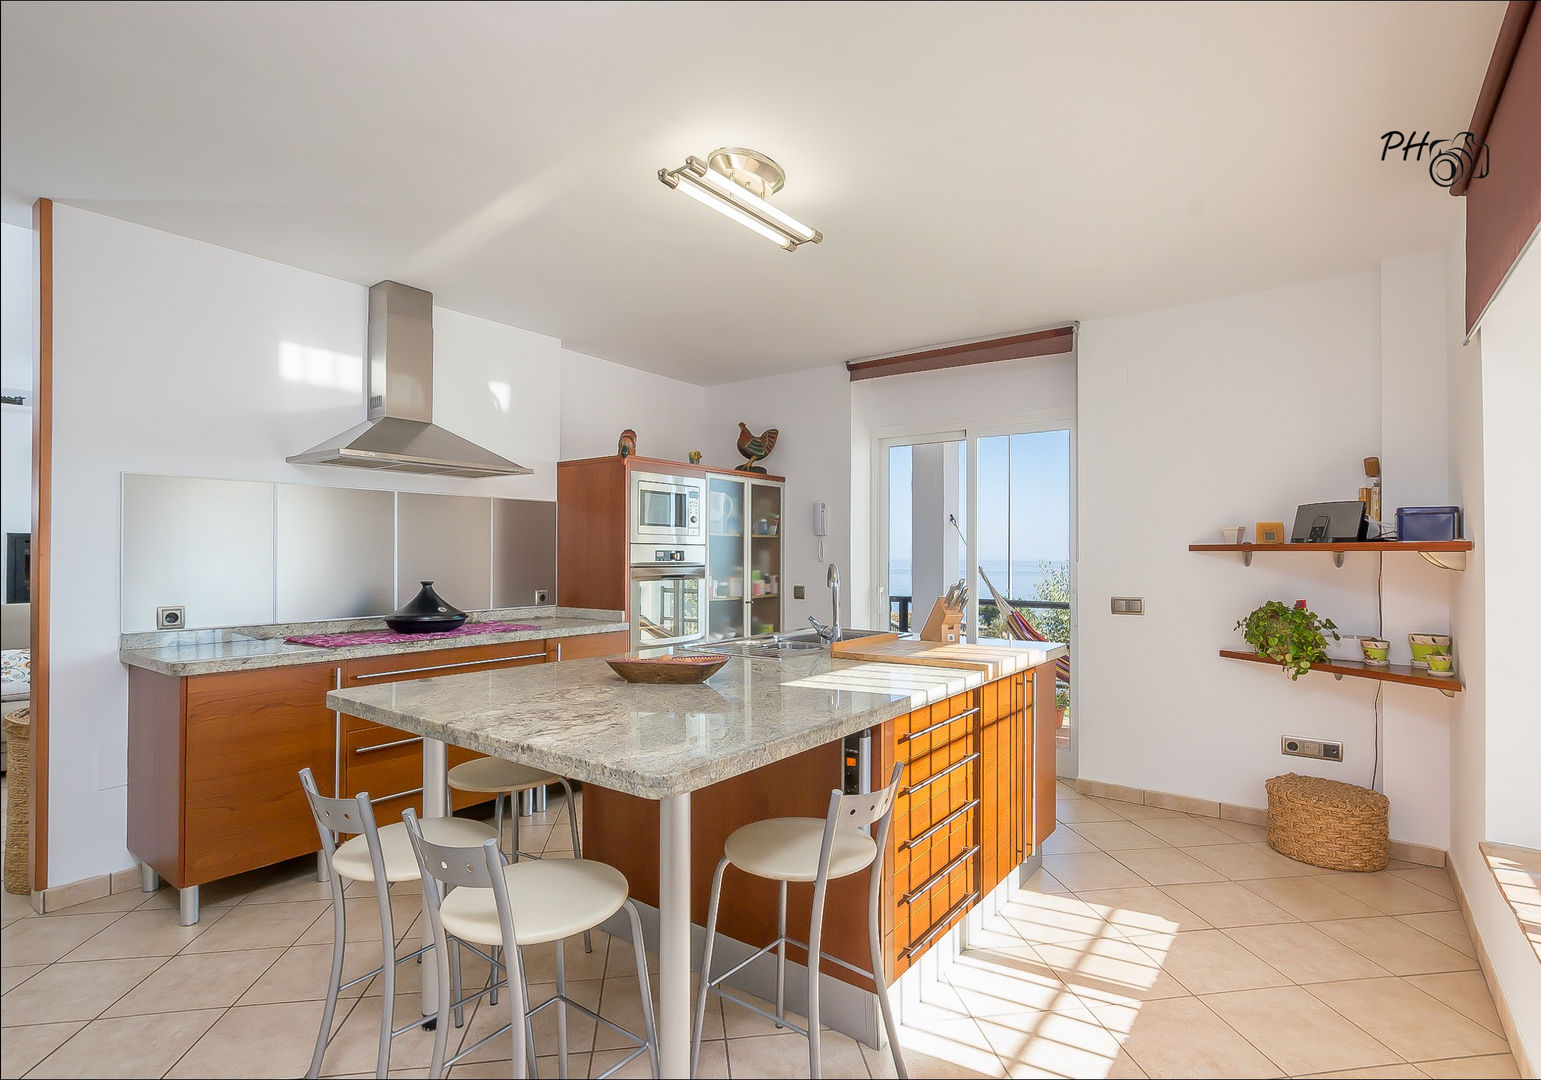 Fotografía de interiores, Málaga / Costa Del Sol. --- Real Estate photography - Málaga / Costa Del Sol, Per Hansen Per Hansen Built-in kitchens